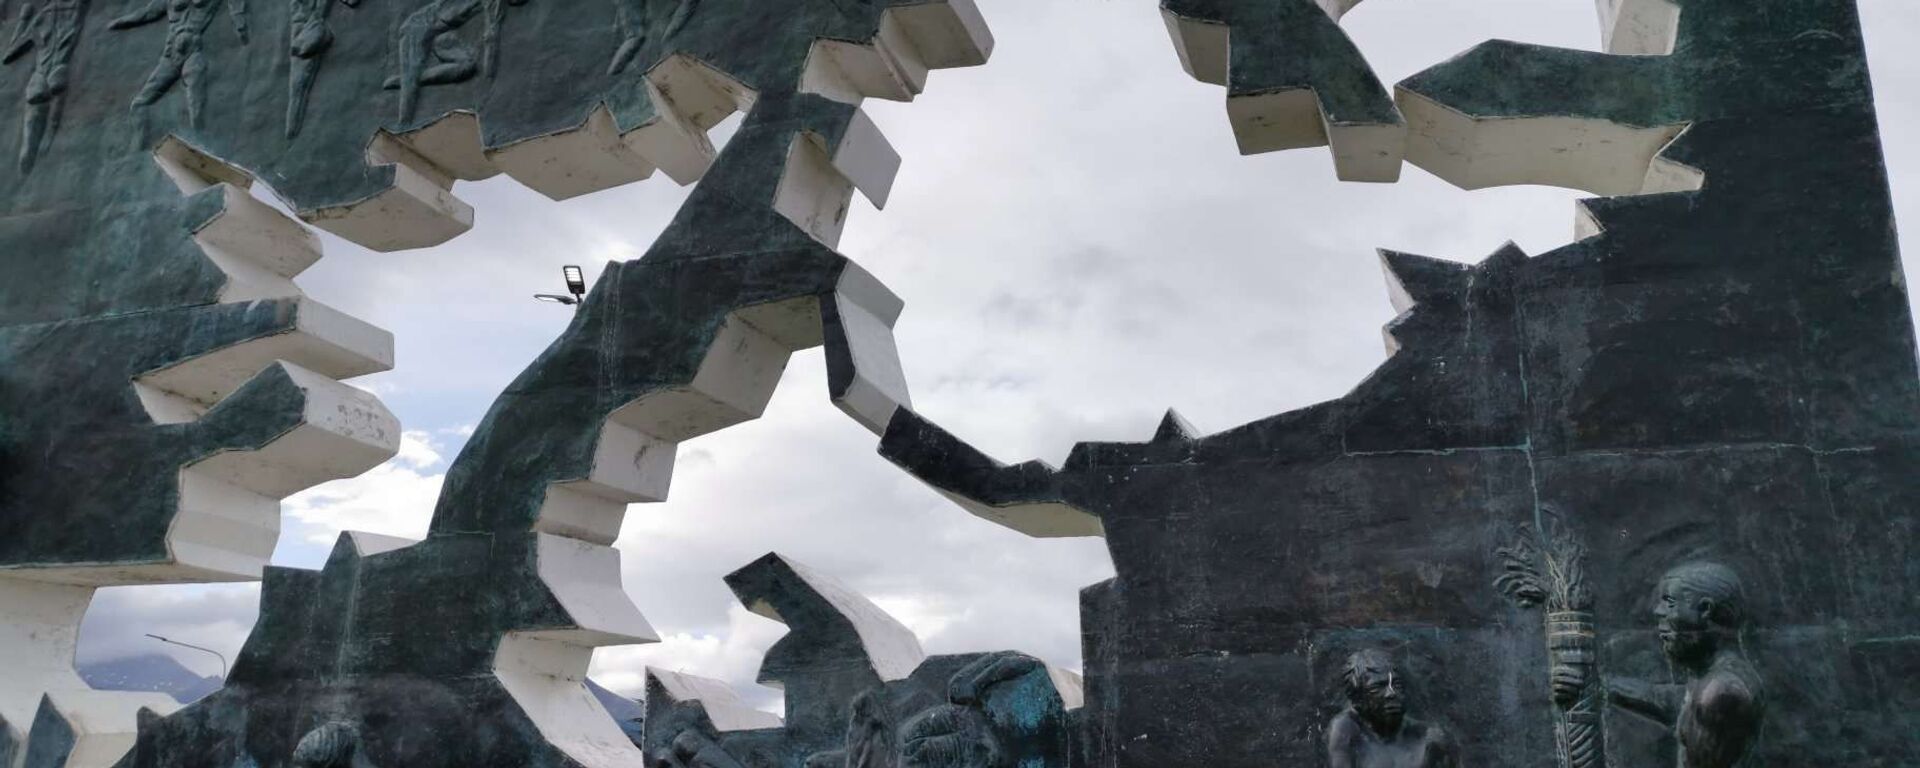 Monumento a los Caídos en Malvinas, en Ushuaia, Argentina - Sputnik Mundo, 1920, 27.07.2021